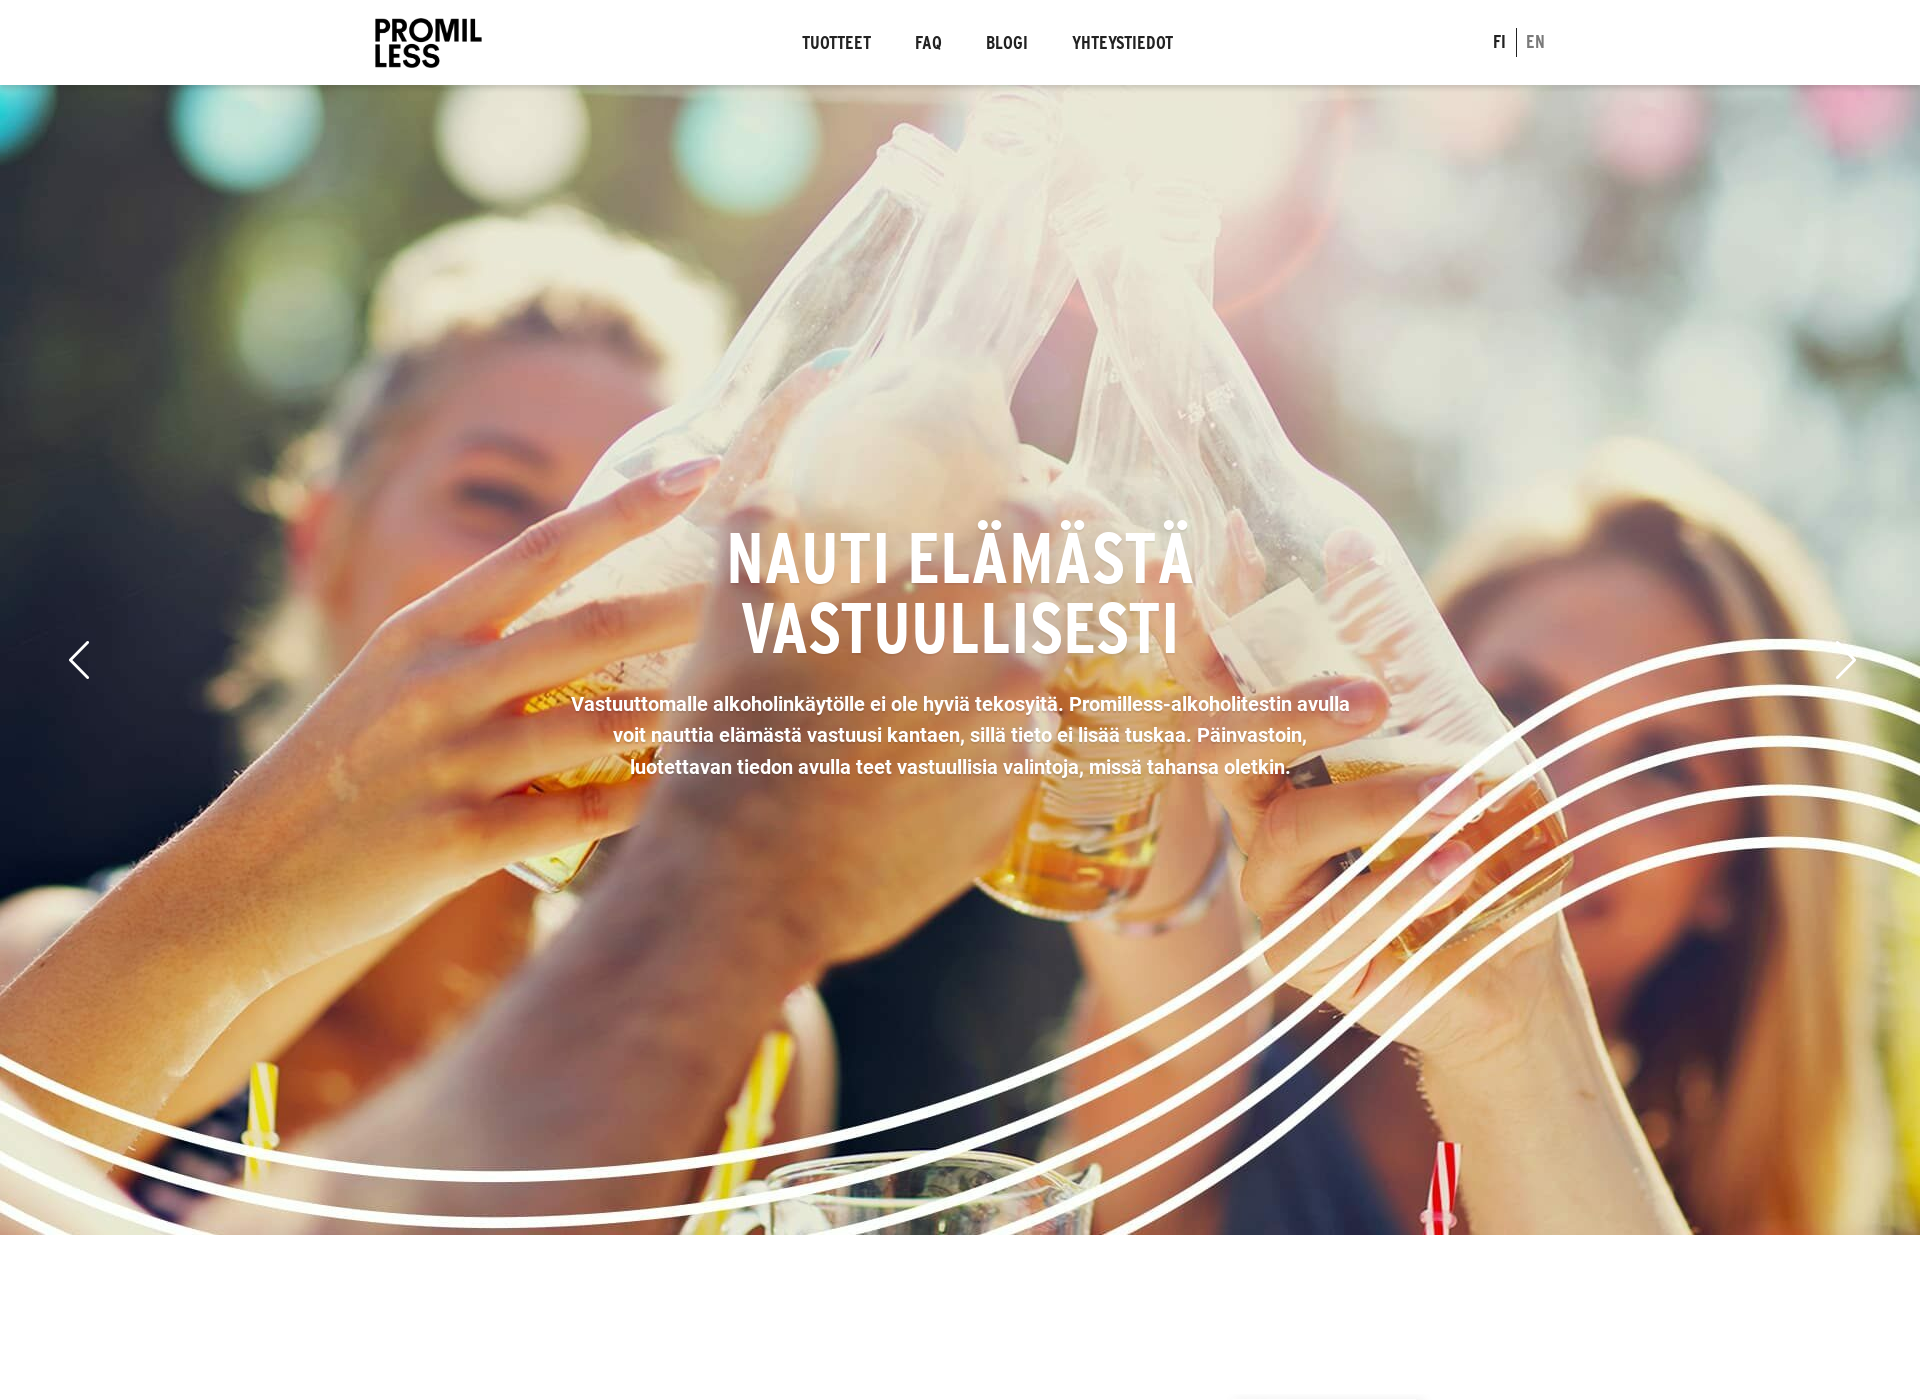 Näyttökuva promilless.fi